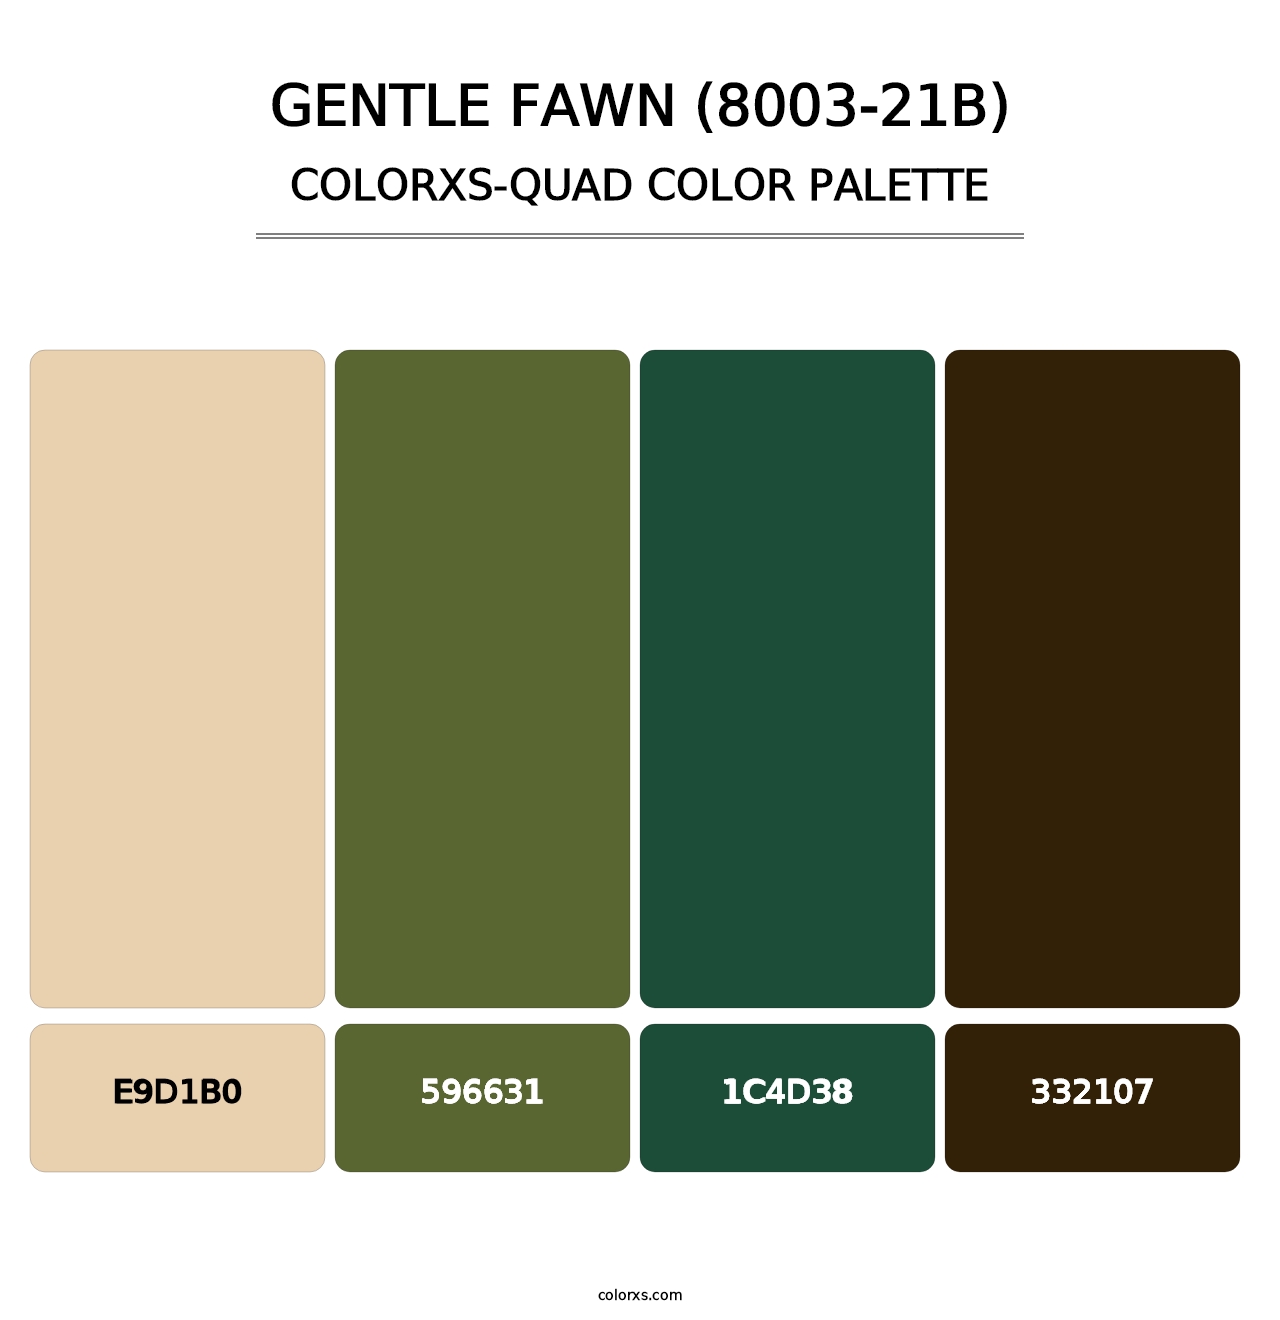 Gentle Fawn (8003-21B) - Colorxs Quad Palette